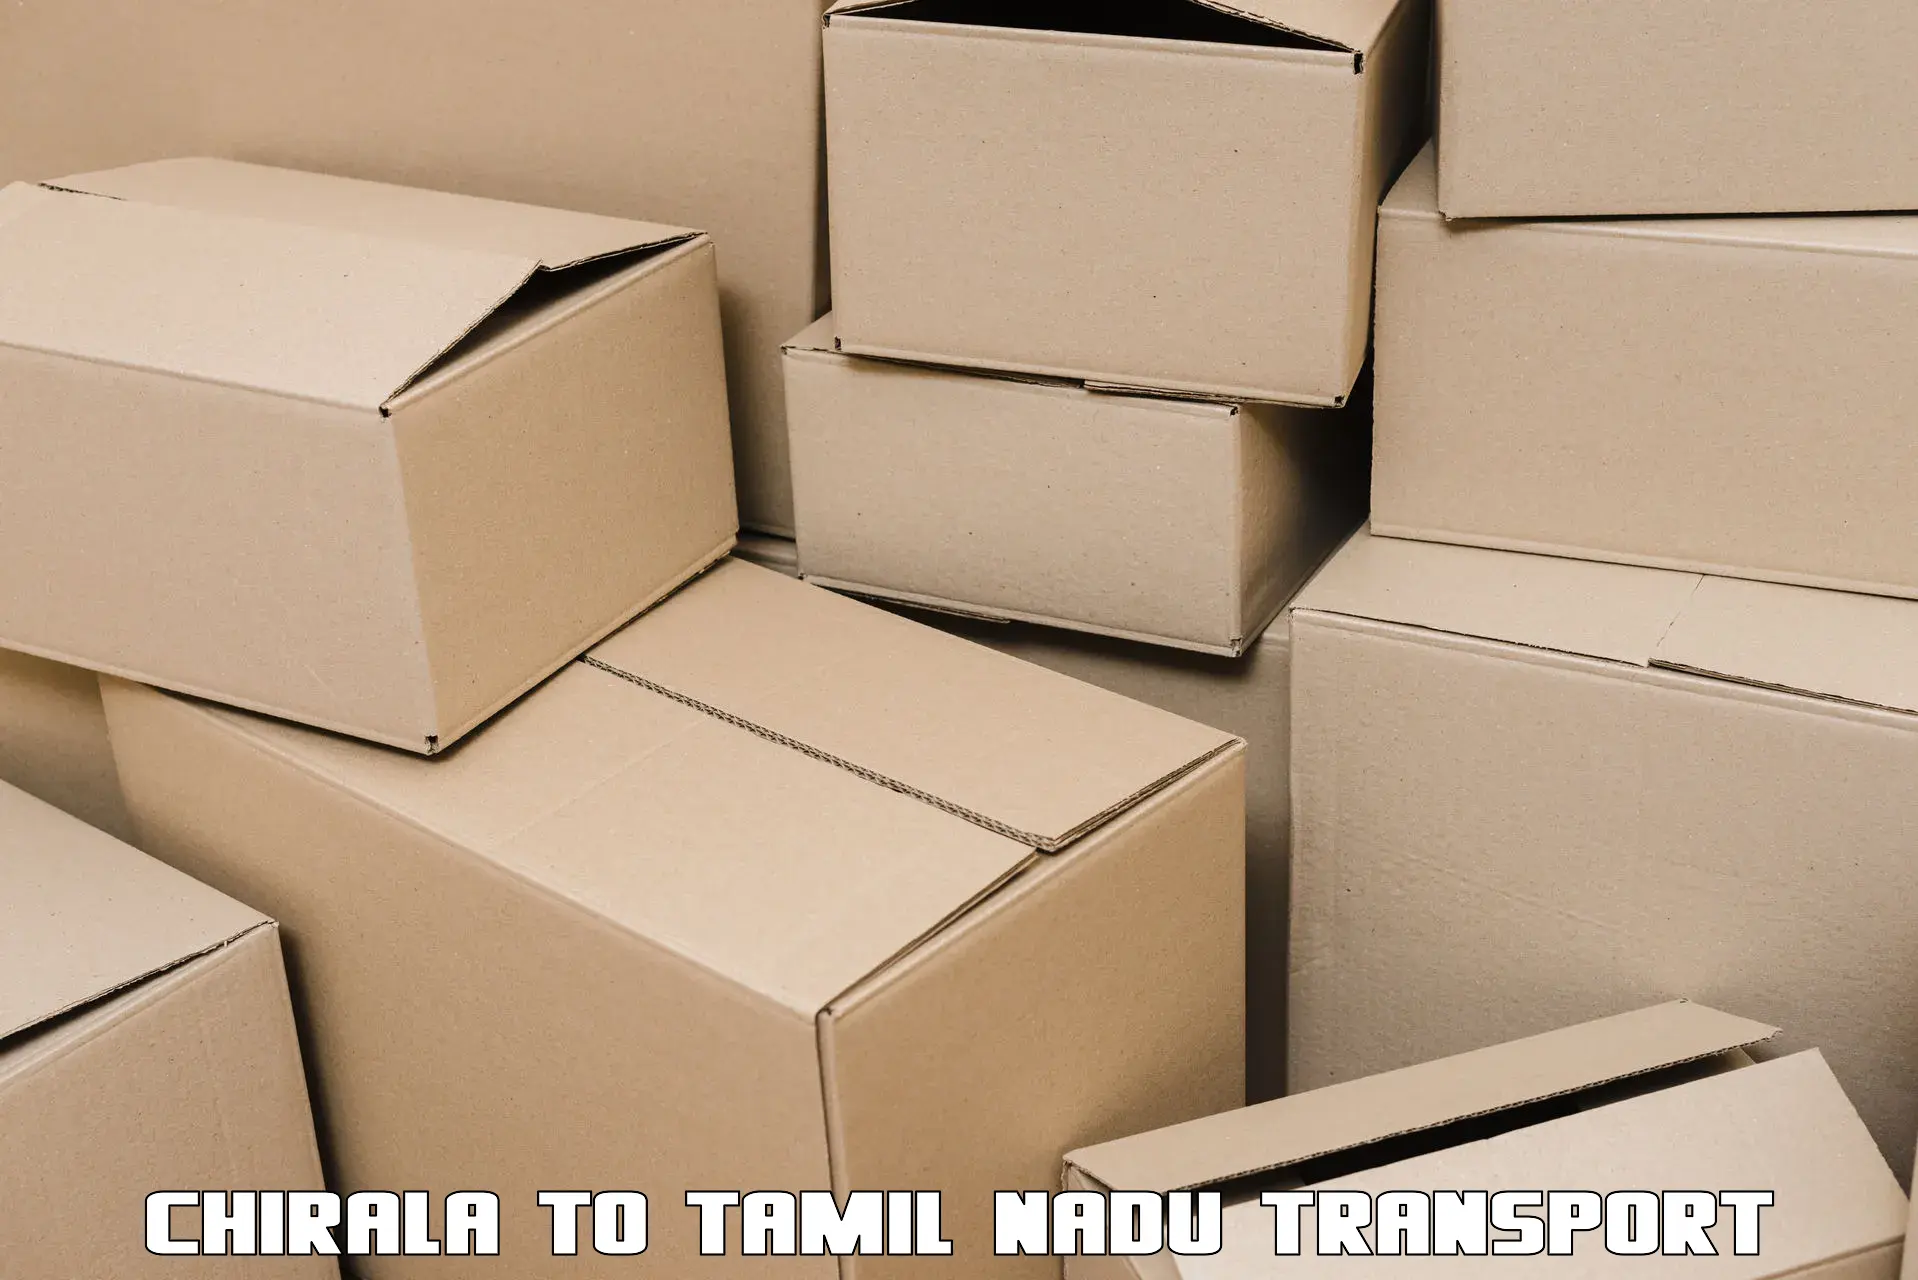 Container transport service Chirala to Thiruvadanai